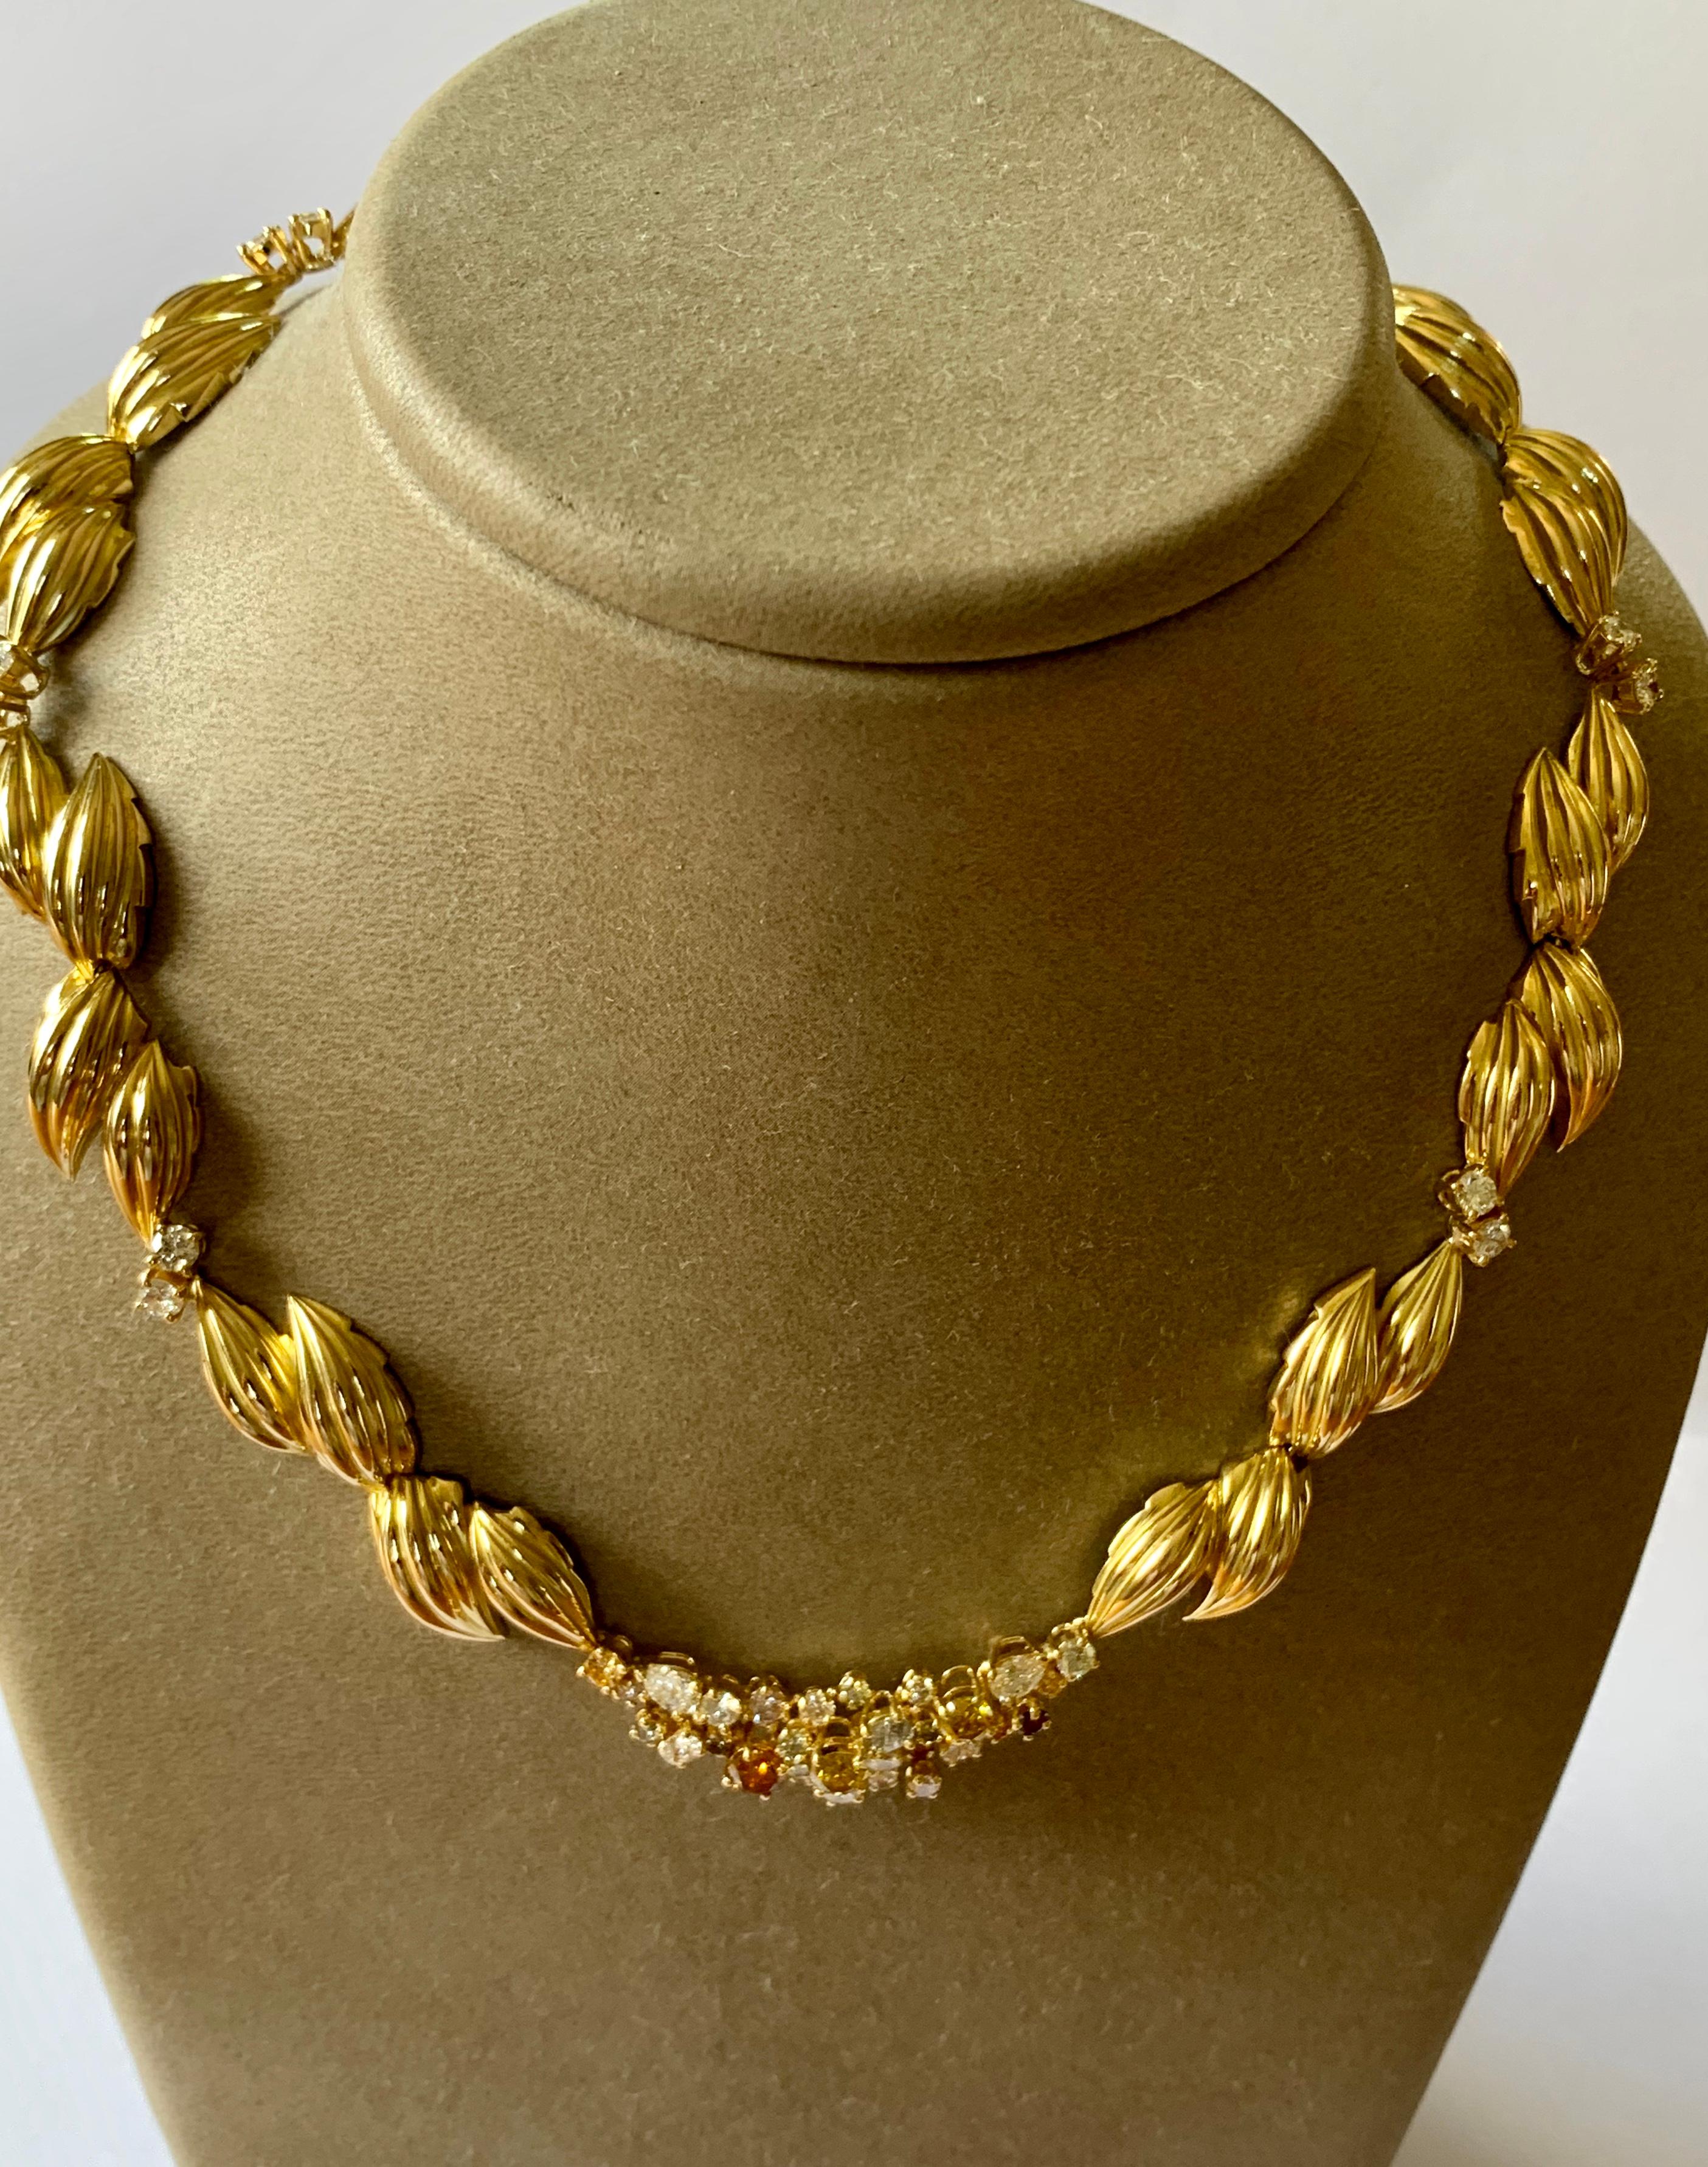 Eine meisterhaft gefertigte Halskette mit Blattmuster aus massivem 18 Karat Gelbgold. Er ist mit 46 weißen und farbigen Diamanten mit einem Gewicht von ca. 5,60 ct. verziert. Die Halskette misst ungefähr 16 Zoll in der Länge und 3/4 Zoll in der